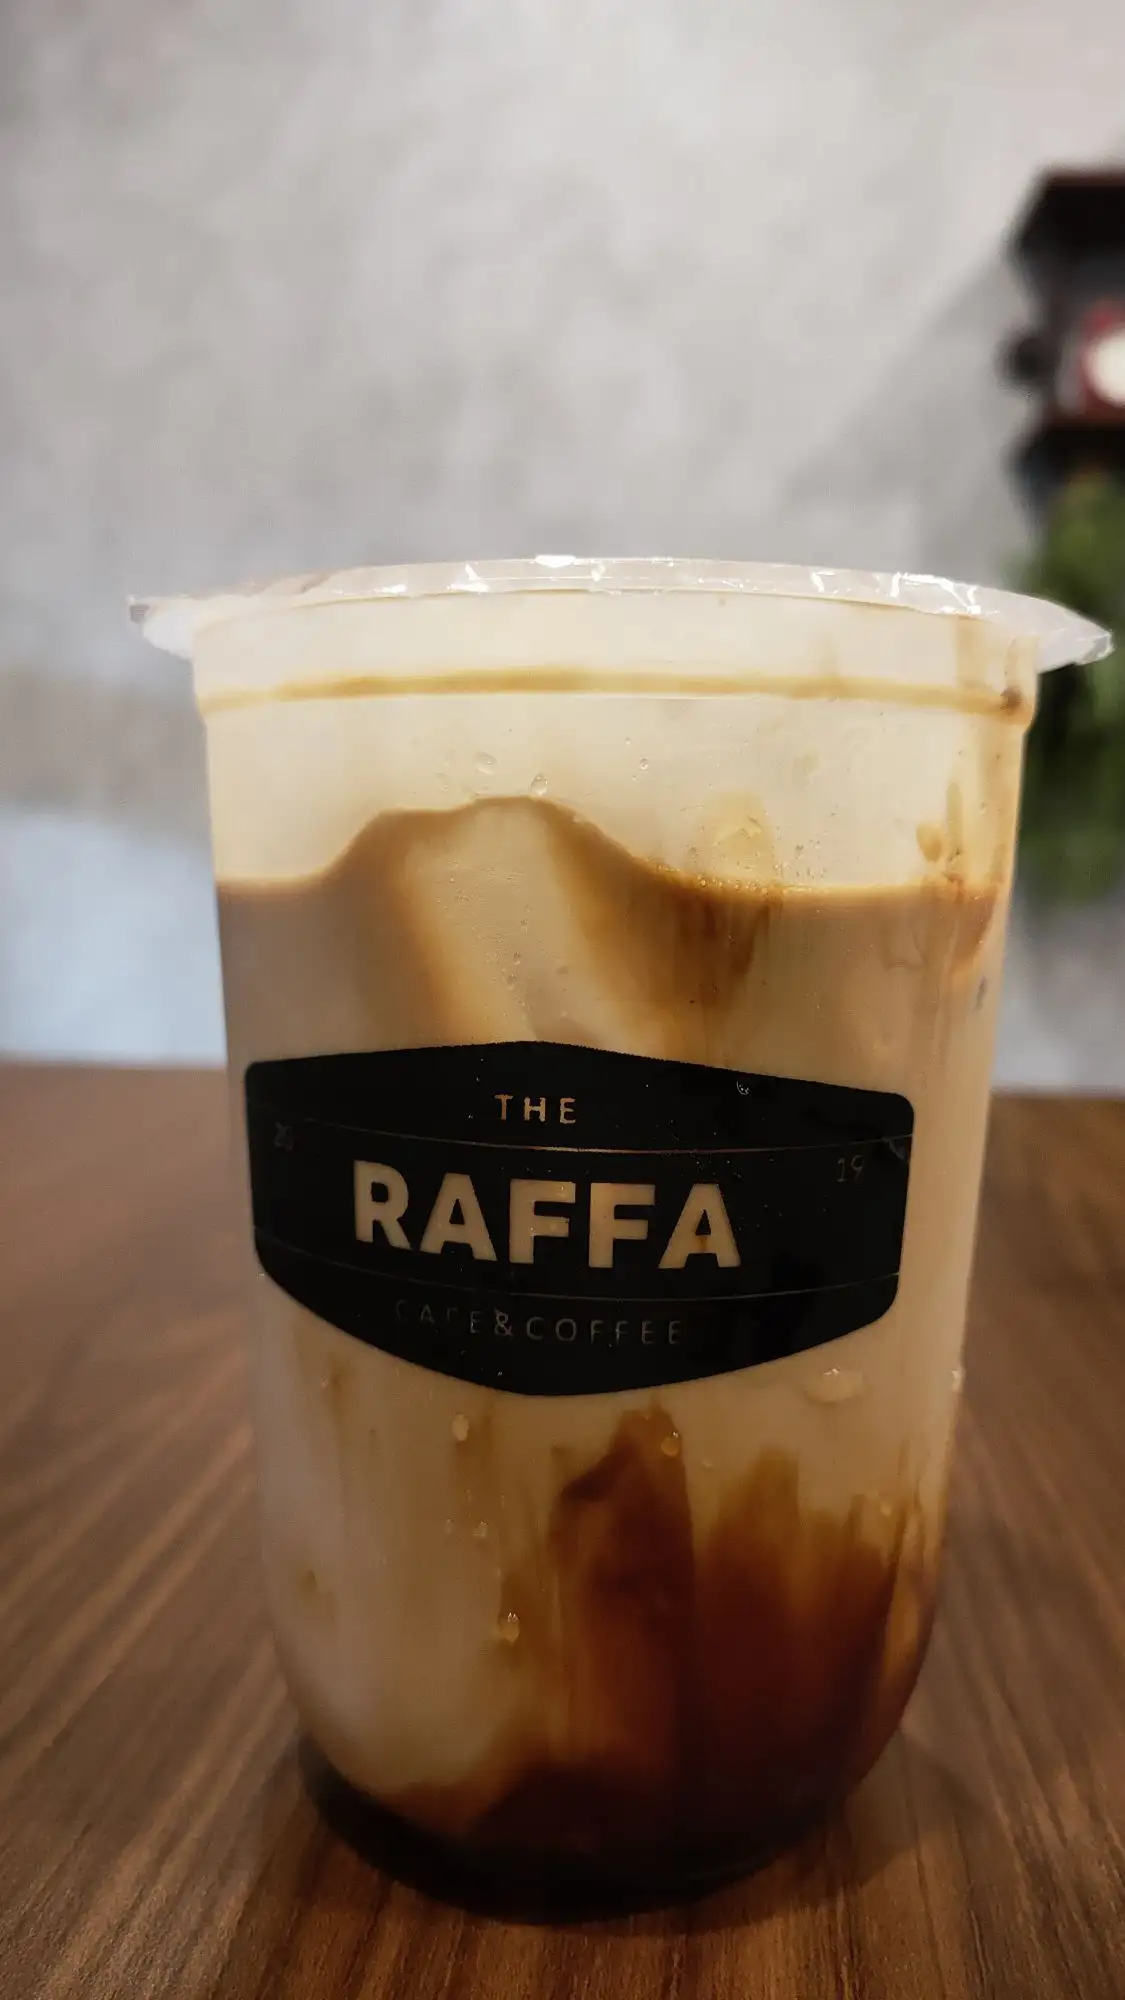 Raffa Cafe & Coffee